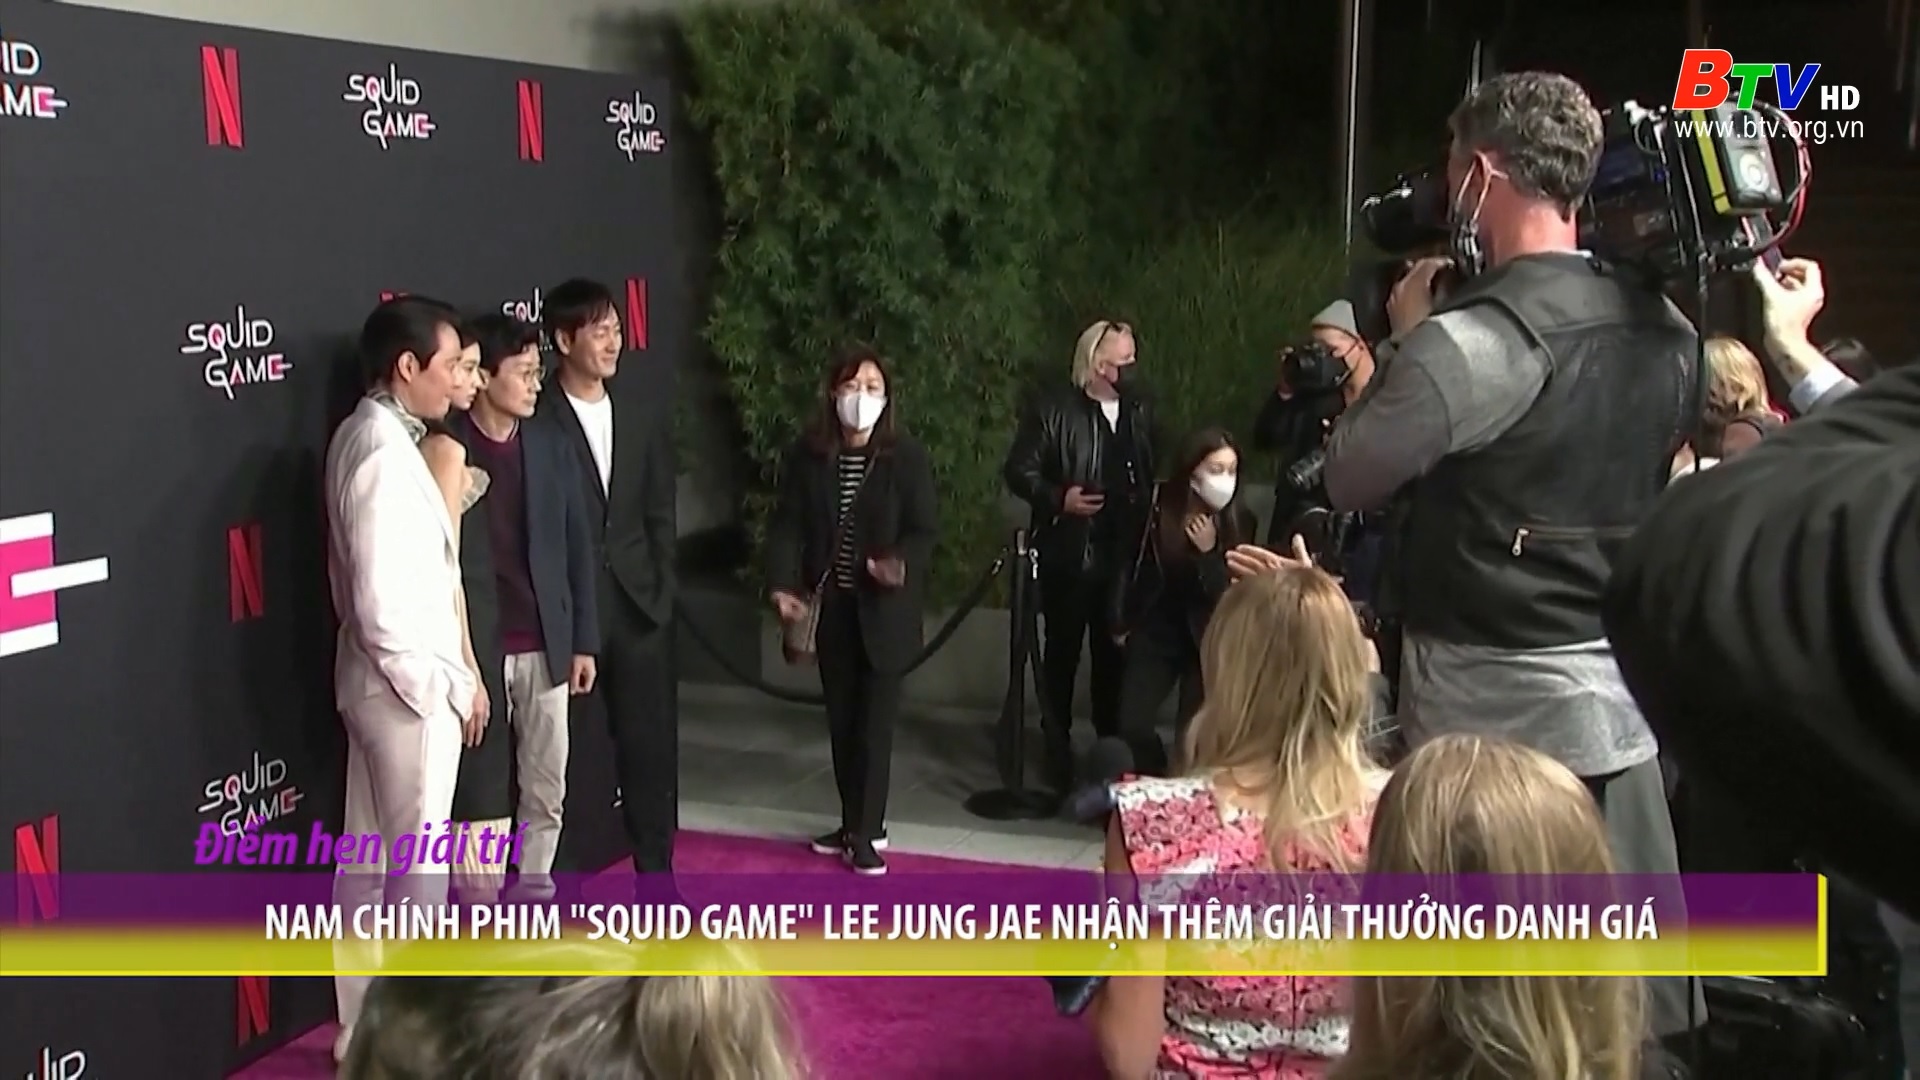 Nam chính phim “Squid Game” Lee Jung Jae nhận thêm giải thưởng danh giá